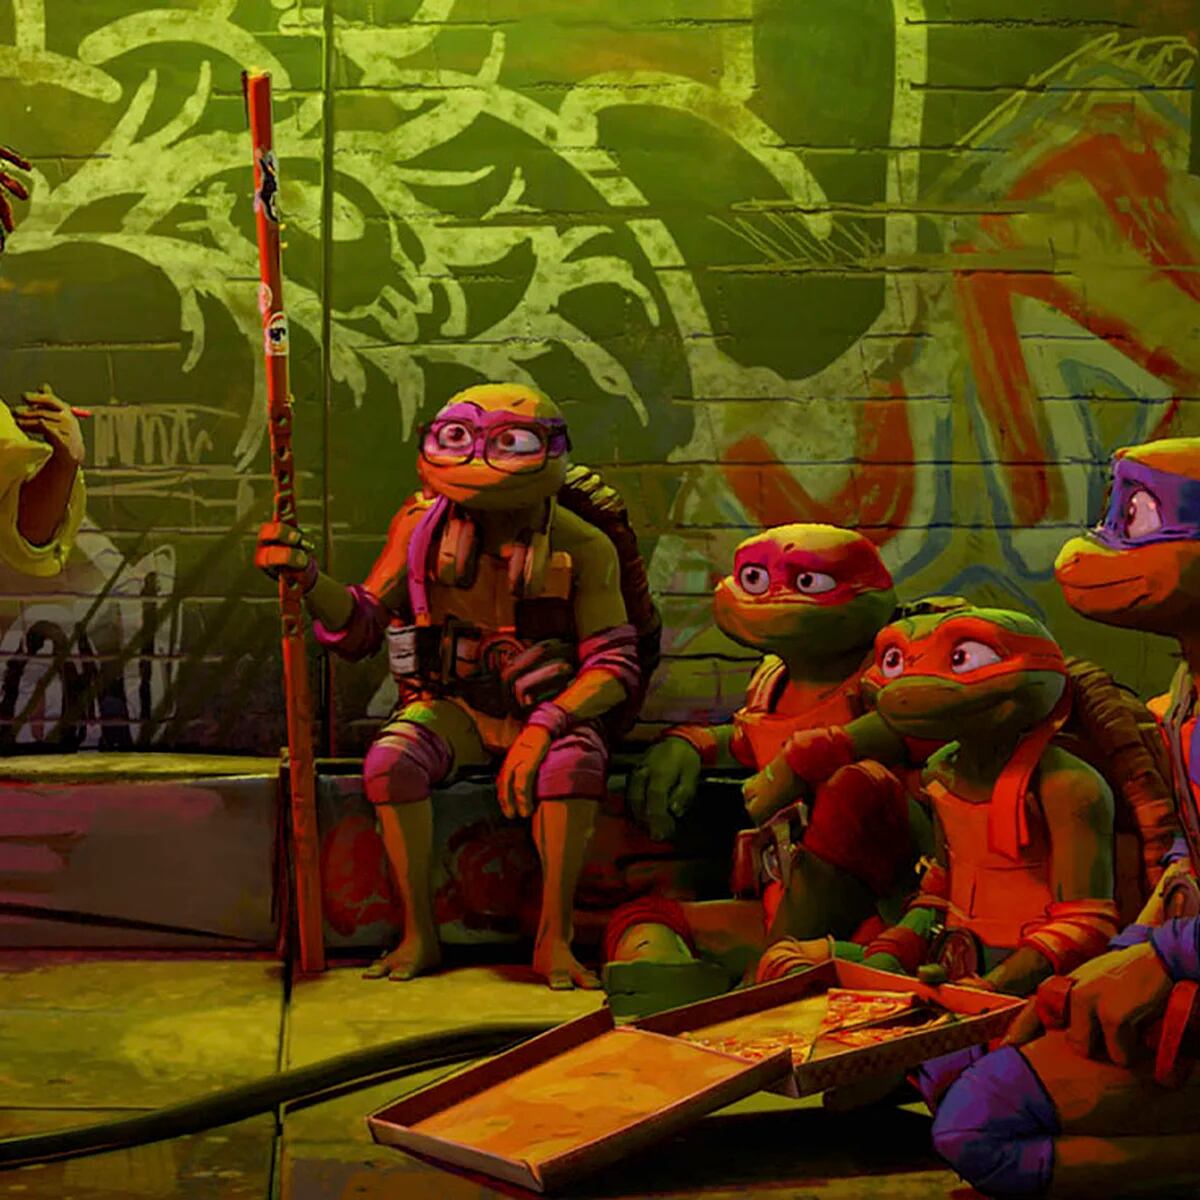 Reseña: Las Tortugas Ninja regresan mejor que antes - Los Angeles Times